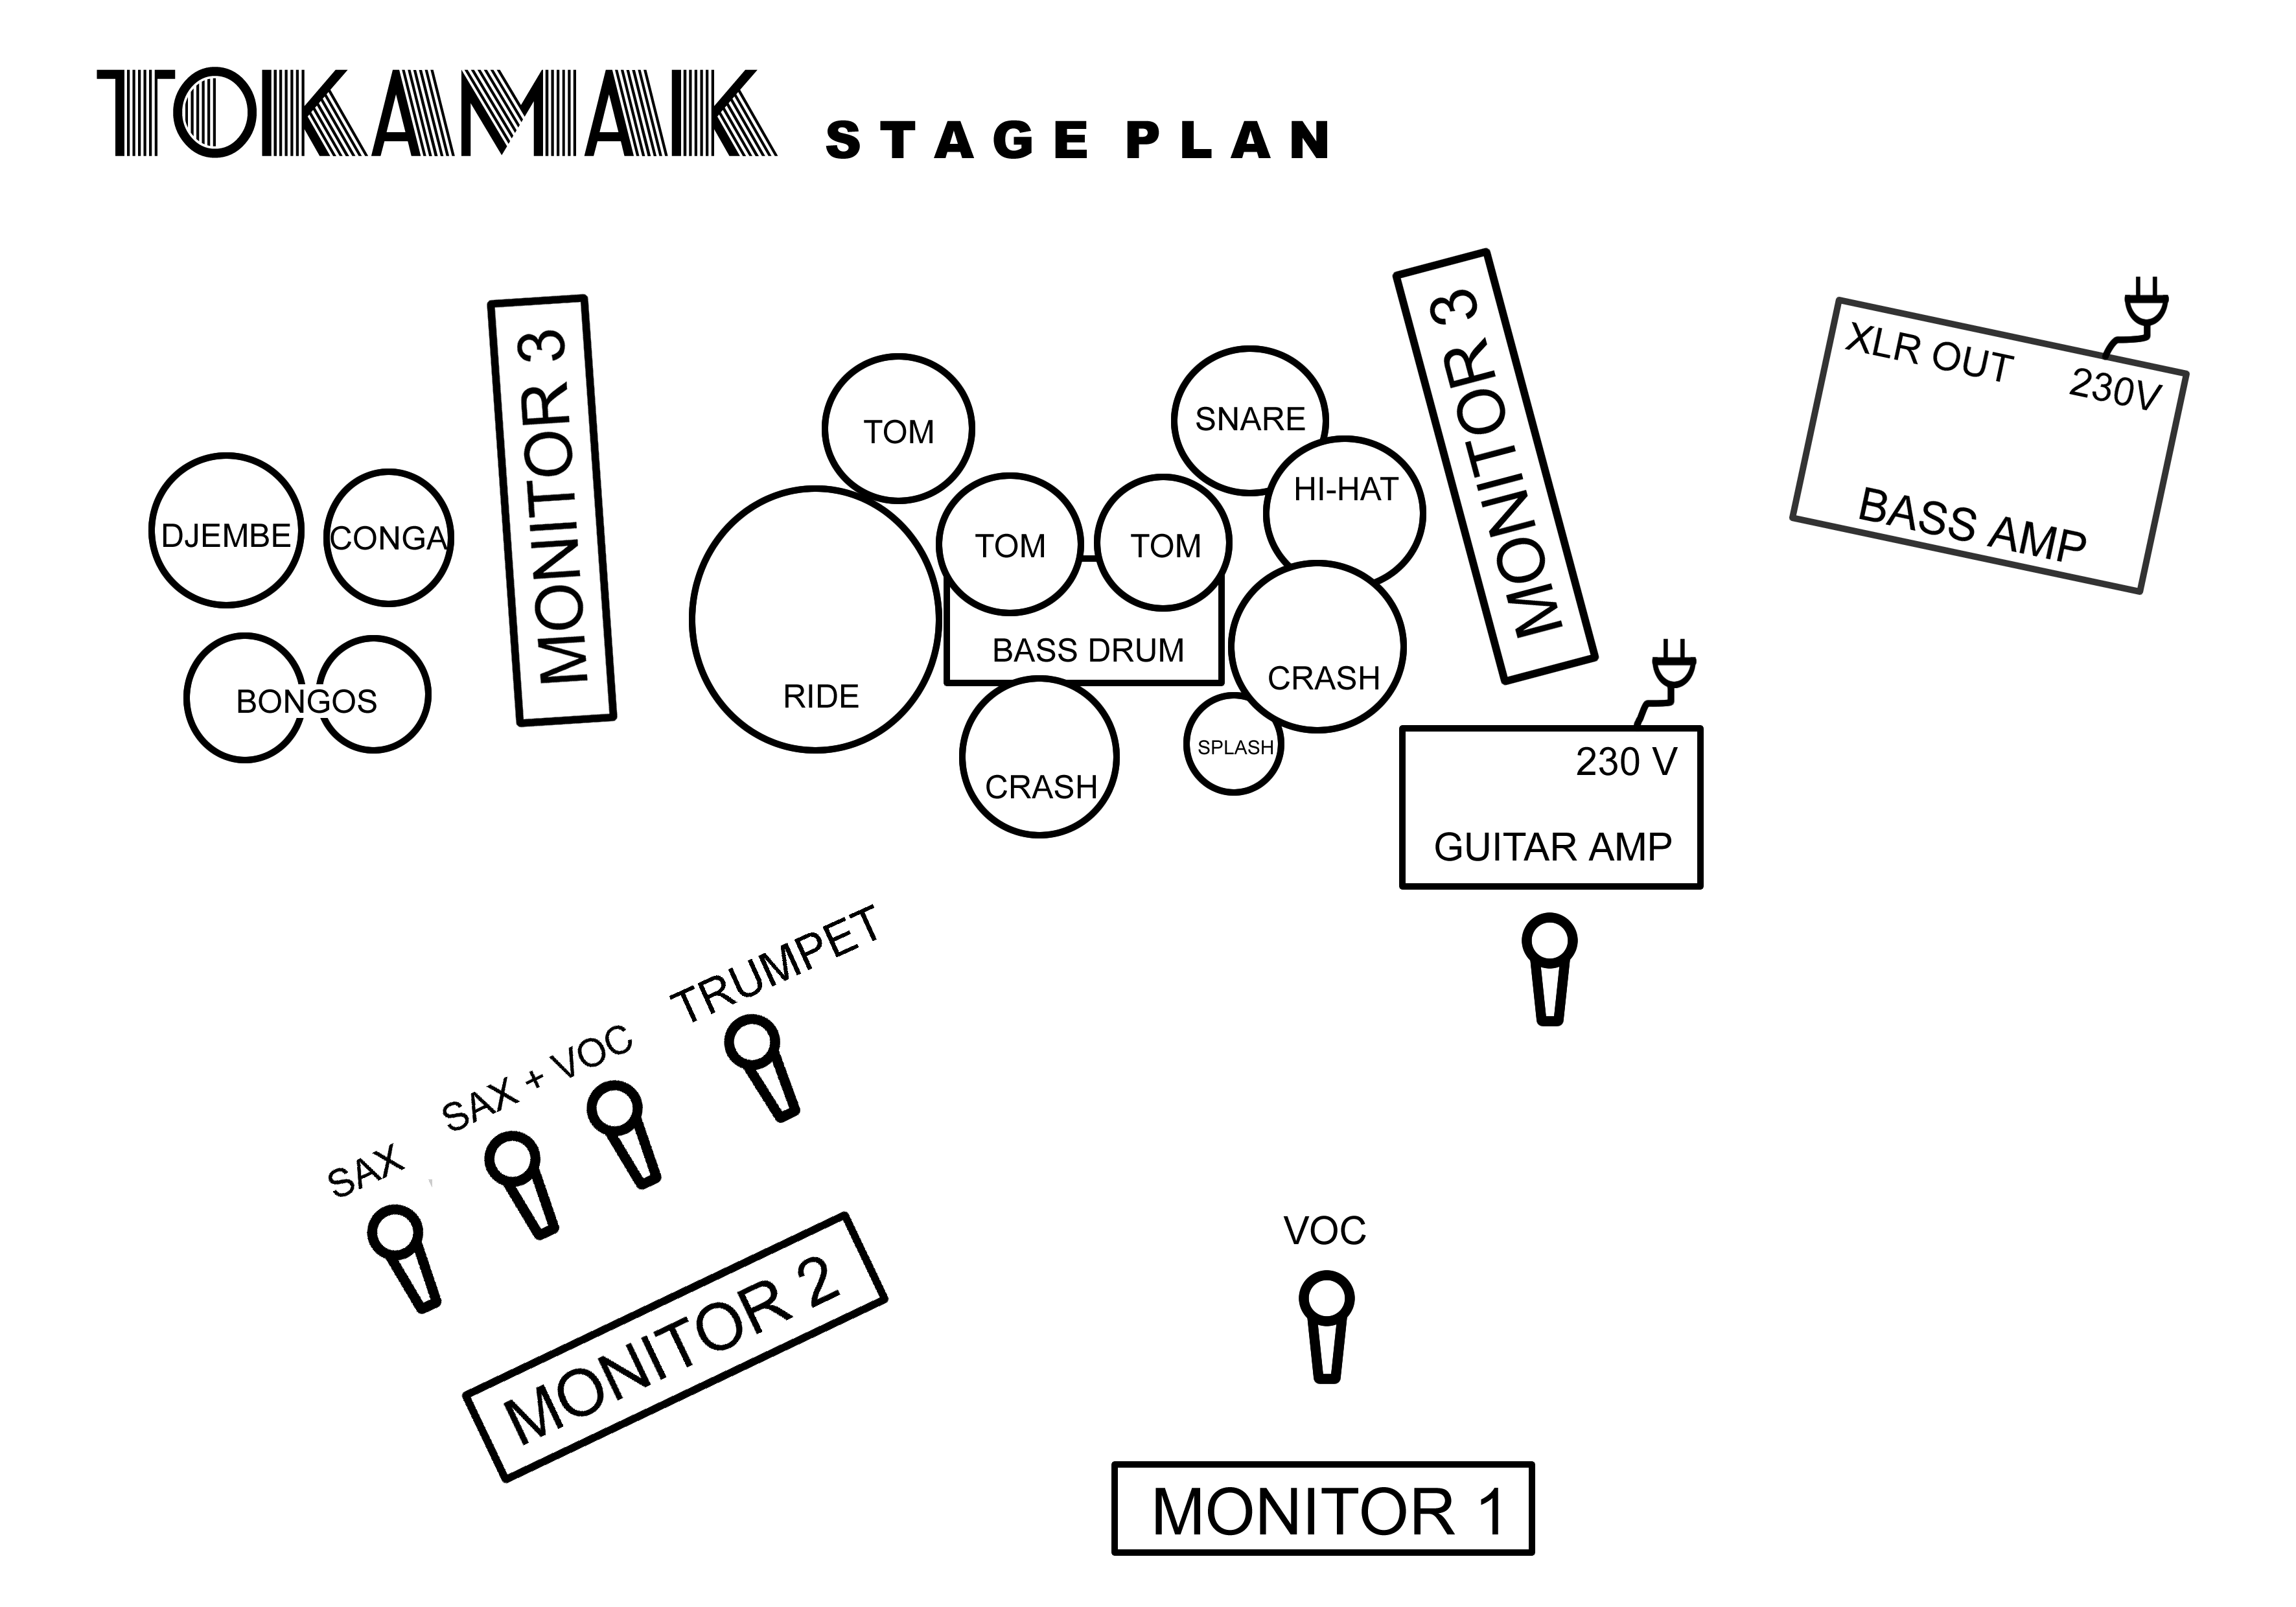 http://tokamak.cz/img/tokamak-stageplan.gif